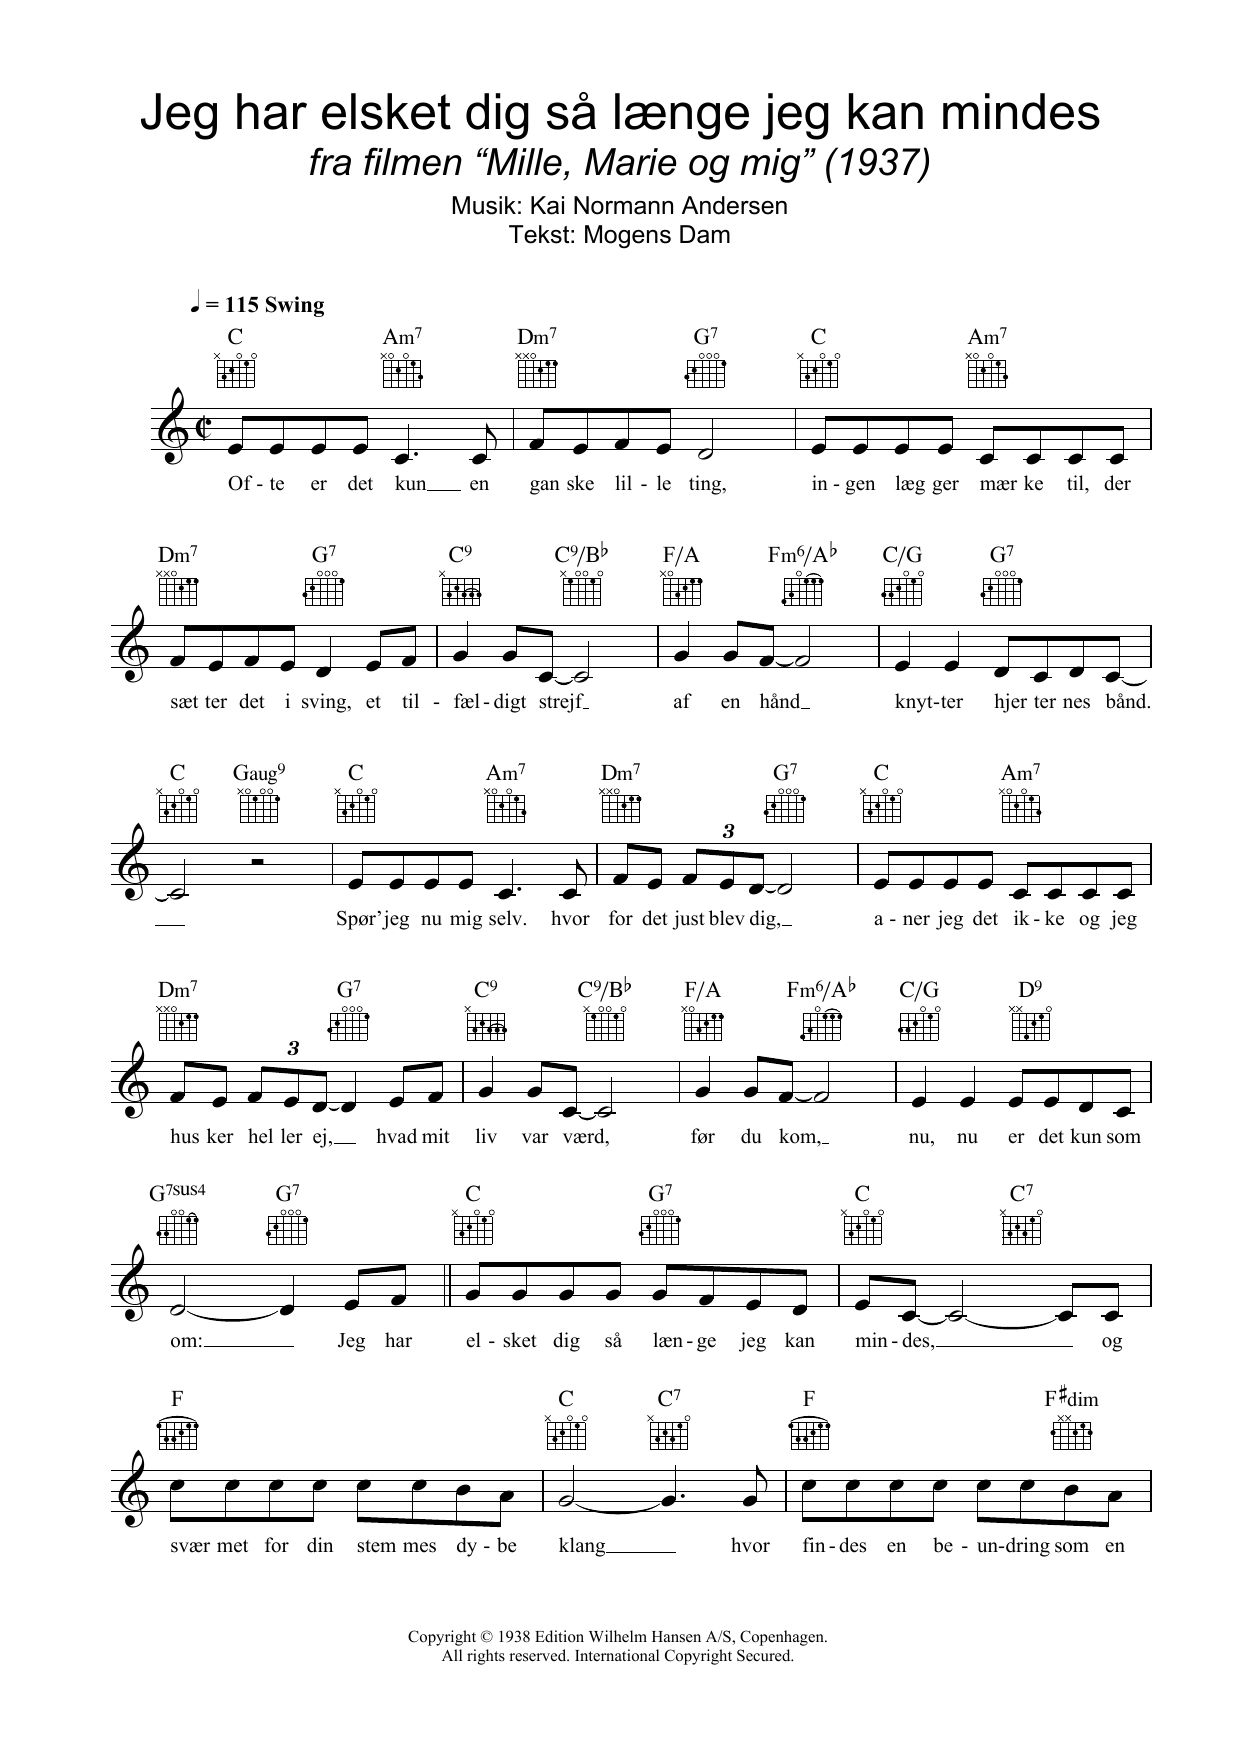 Download Kai Normann Andersen Jeg Har Elsket Dig Så Længe Jeg Kan Mindes Sheet Music and learn how to play Melody Line, Lyrics & Chords PDF digital score in minutes